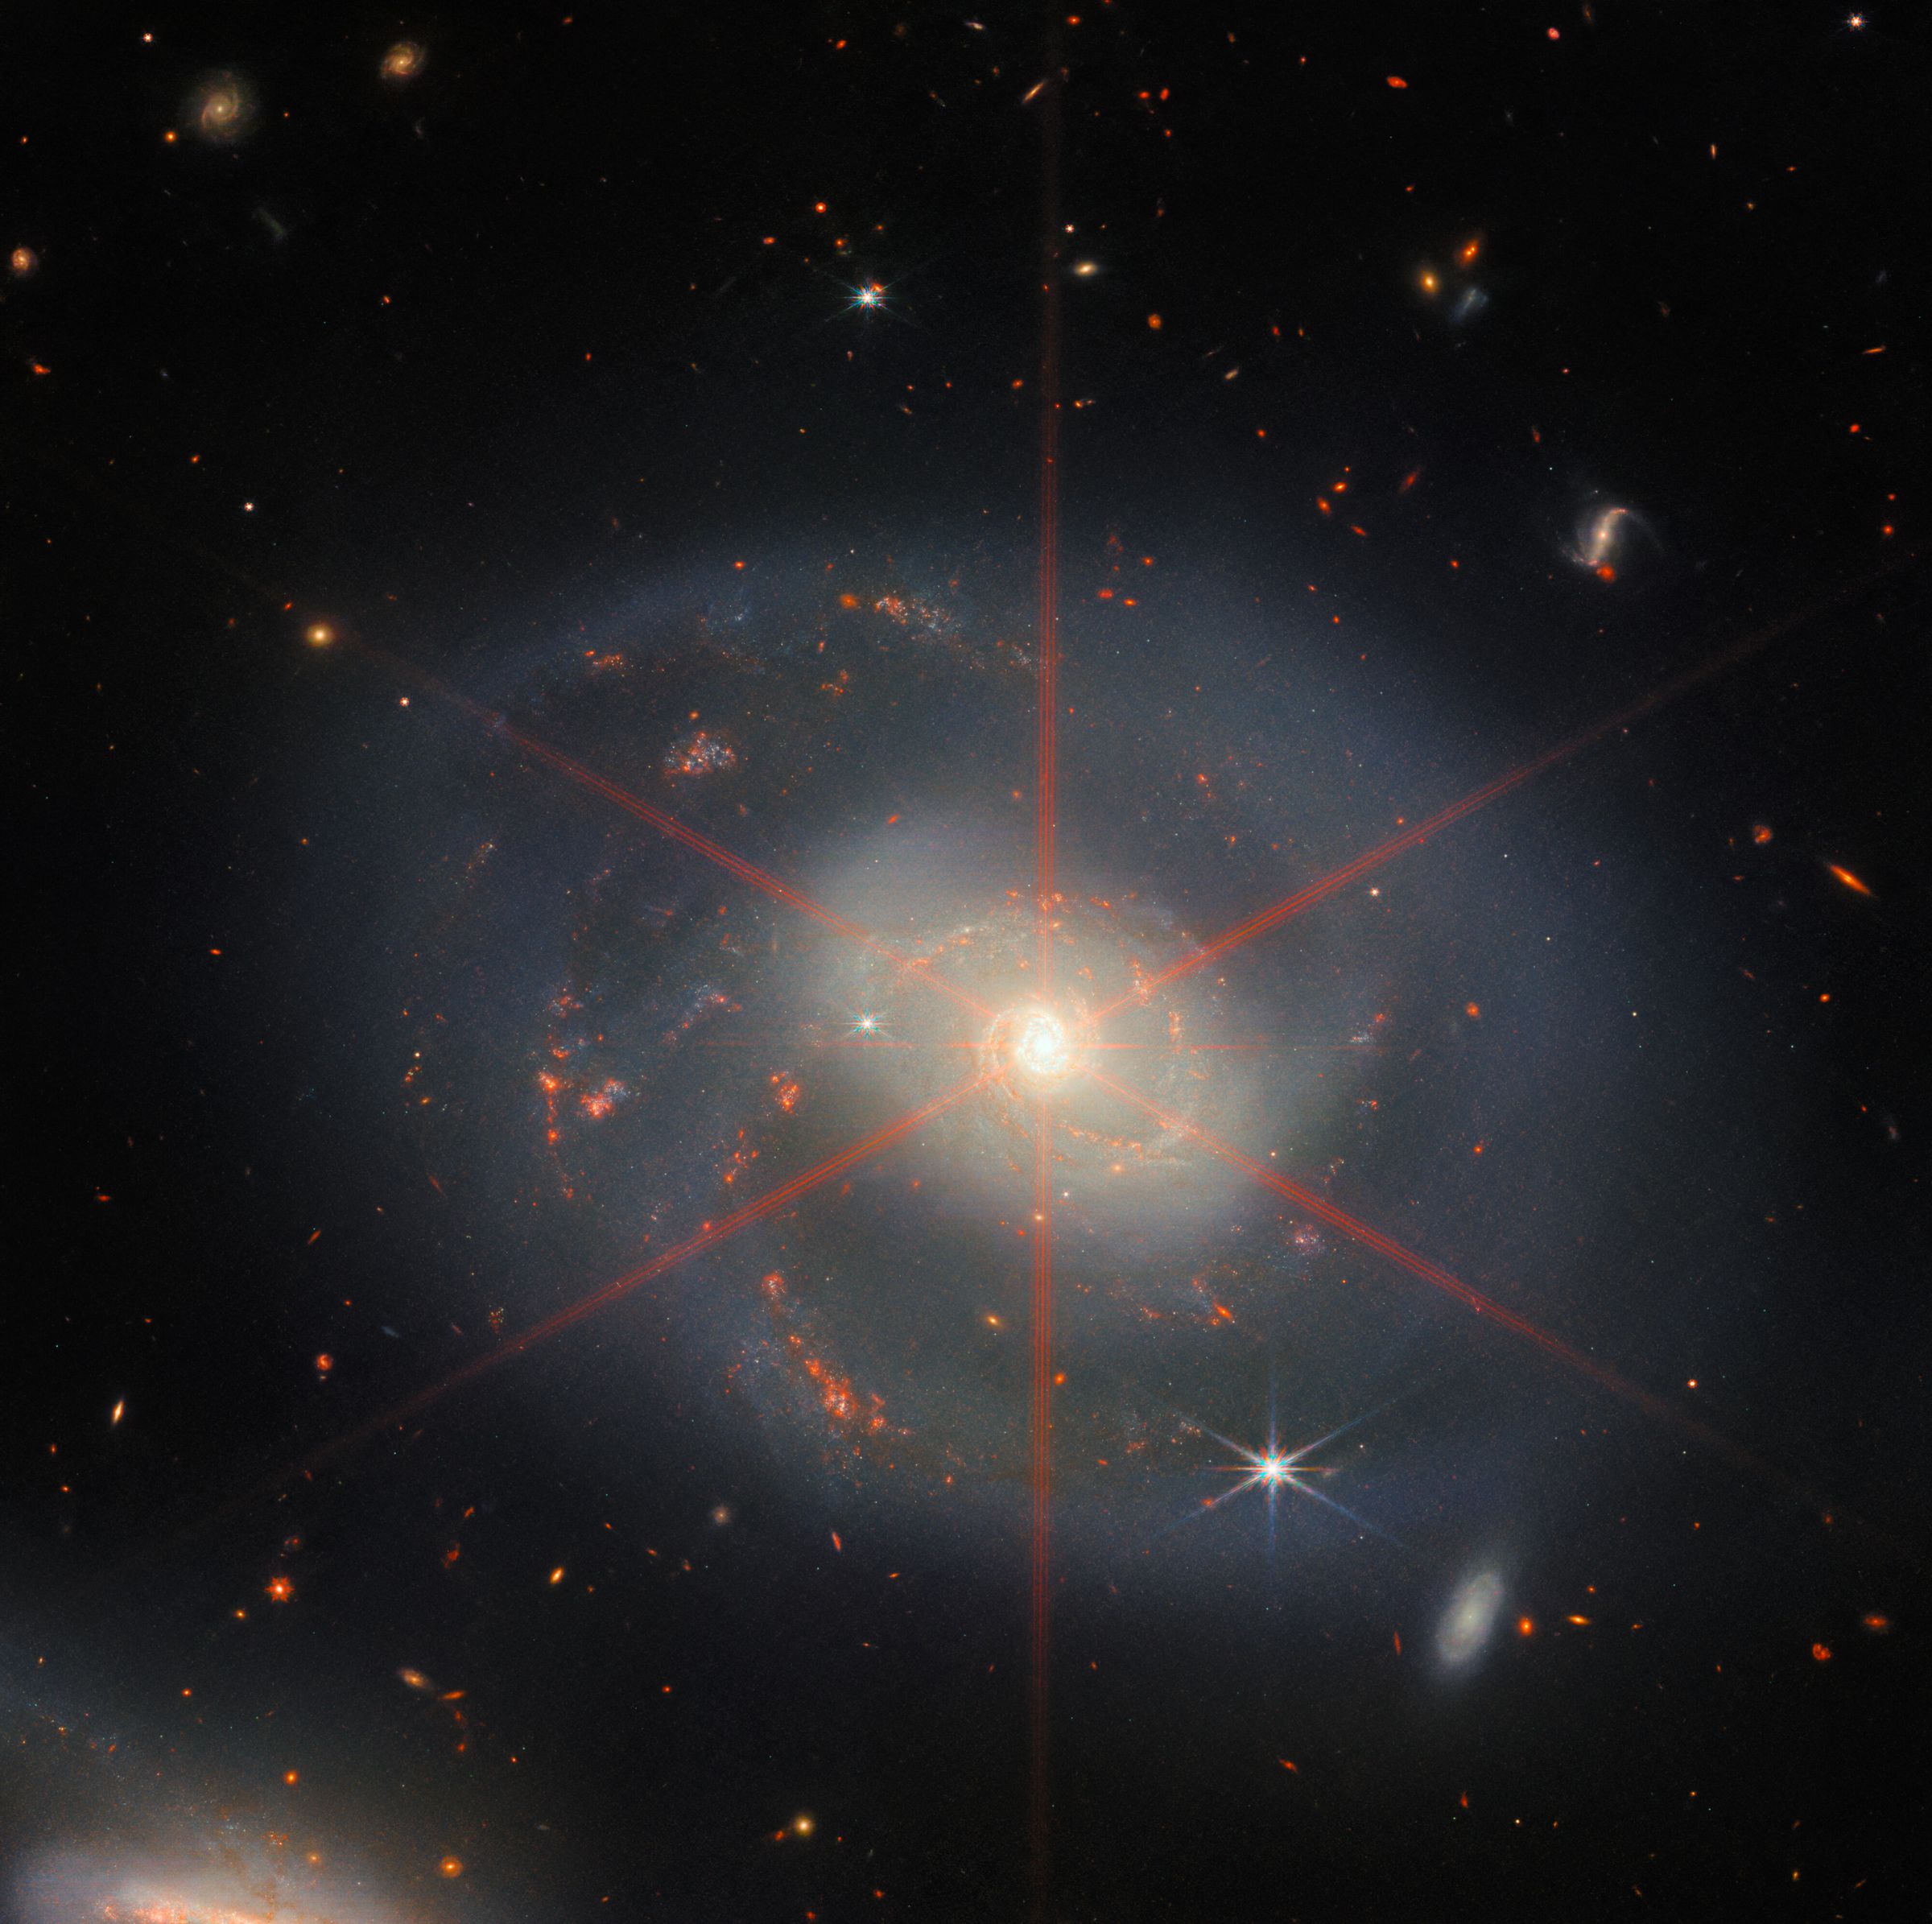 Esta imagen muestra una galaxia espiral dominada por una región central brillante.  La galaxia tiene tonos azul-púrpura con regiones naranja-rojas llenas de estrellas.  También se puede ver un gran pico de difracción, que aparece como un patrón estelar sobre la región central de la galaxia.  Muchas estrellas y galaxias llenan el paisaje de fondo.